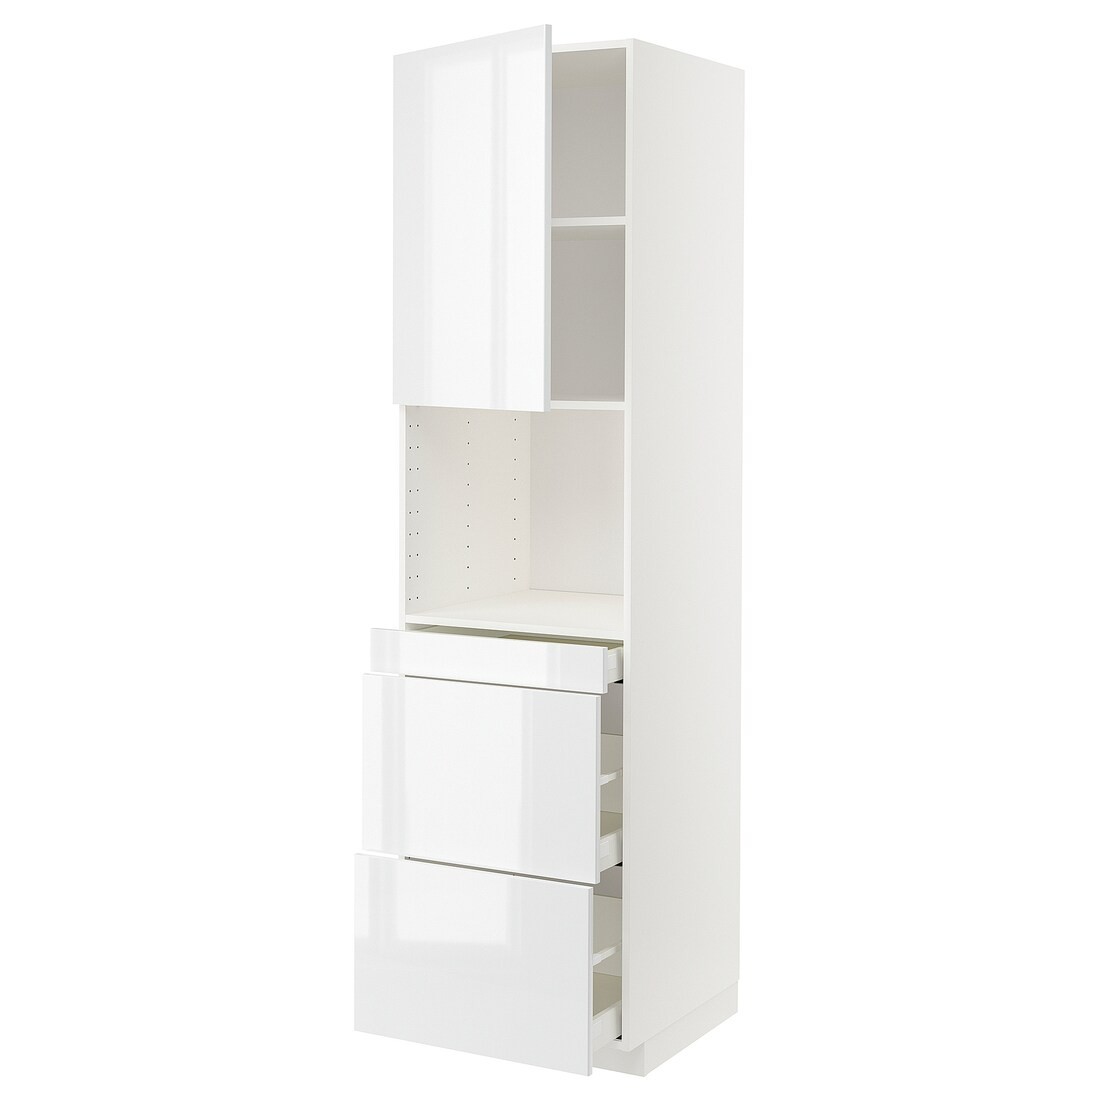 IKEA METOD МЕТОД / MAXIMERA МАКСИМЕРА Высокий шкаф для СВЧ / дверца / 3 ящика, белый / Ringhult белый, 60x60x220 см 89469800 | 894.698.00